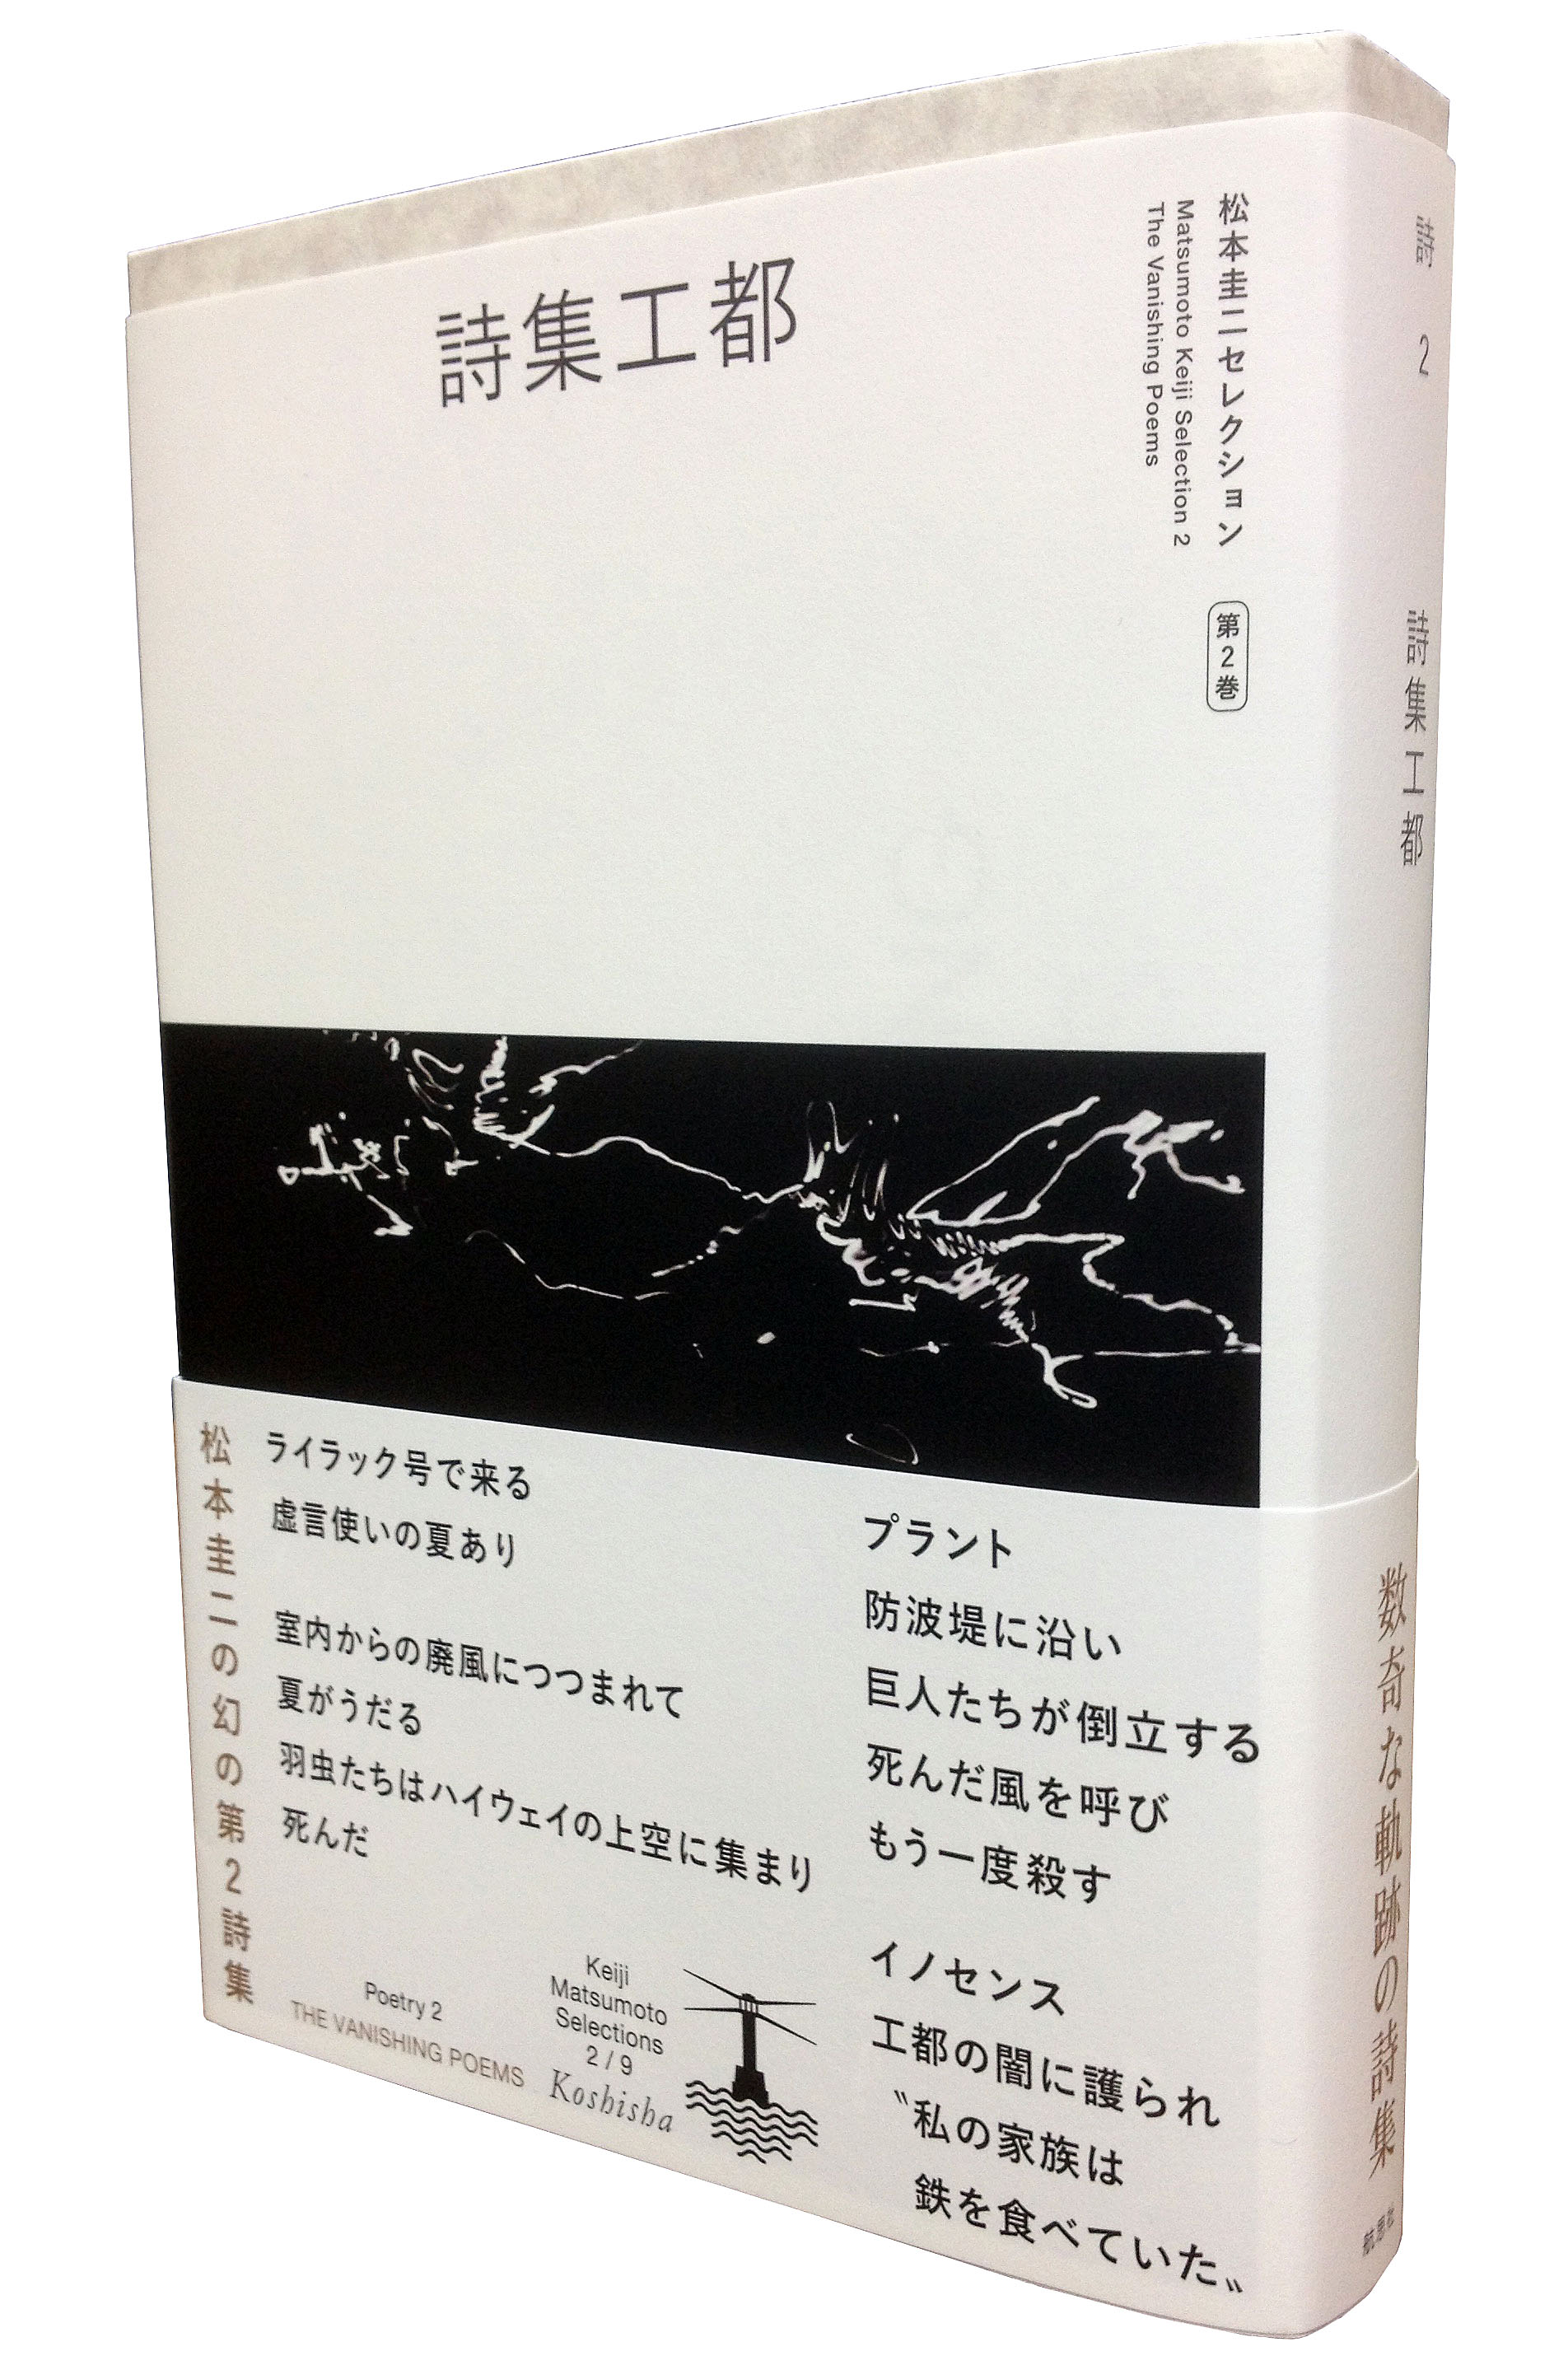 詩集『ロング・リリイフ』松本圭二 - 文学/小説